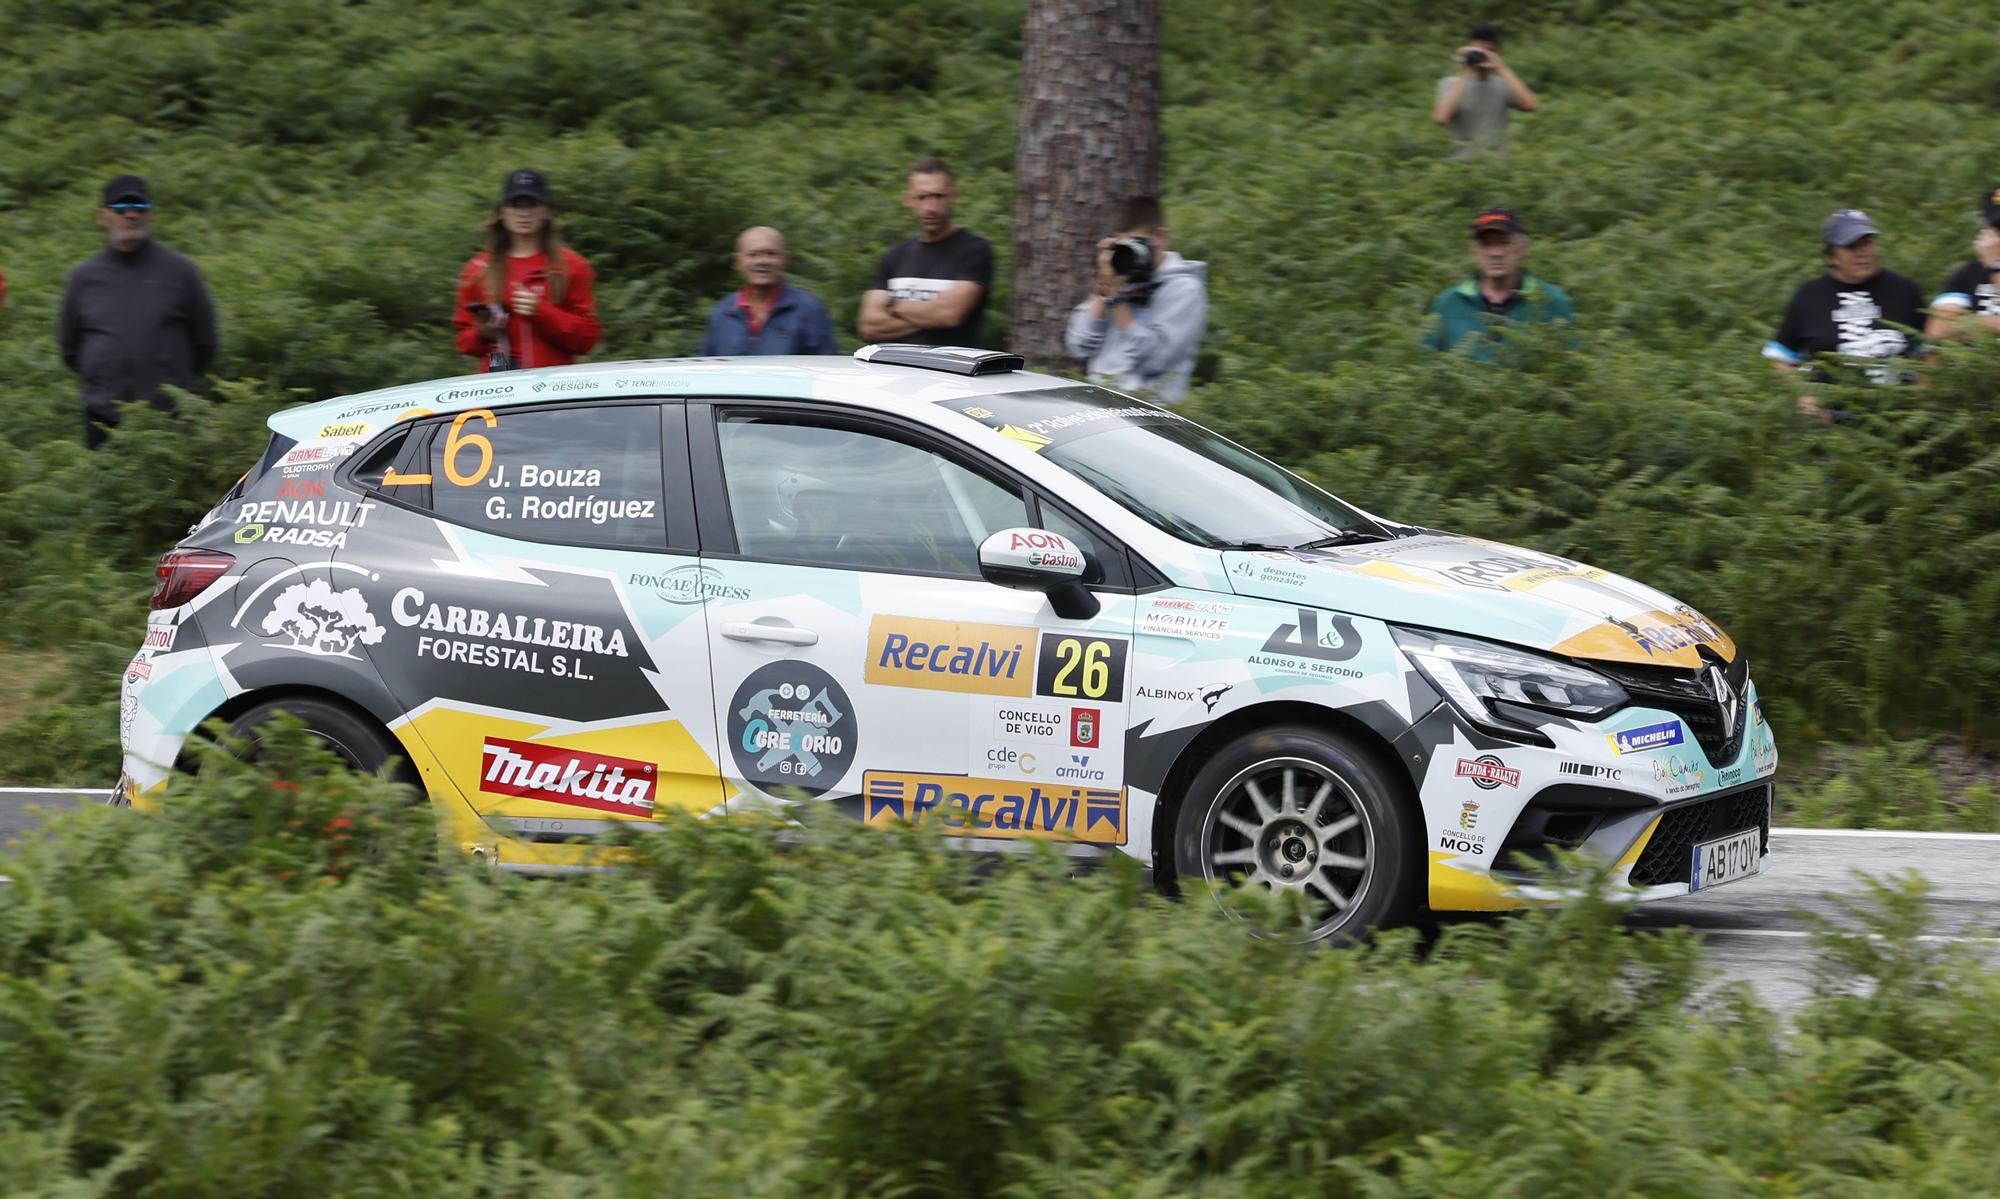 Velocidad de vértigo y curvas imposibles en el Rallye Rías Baixas